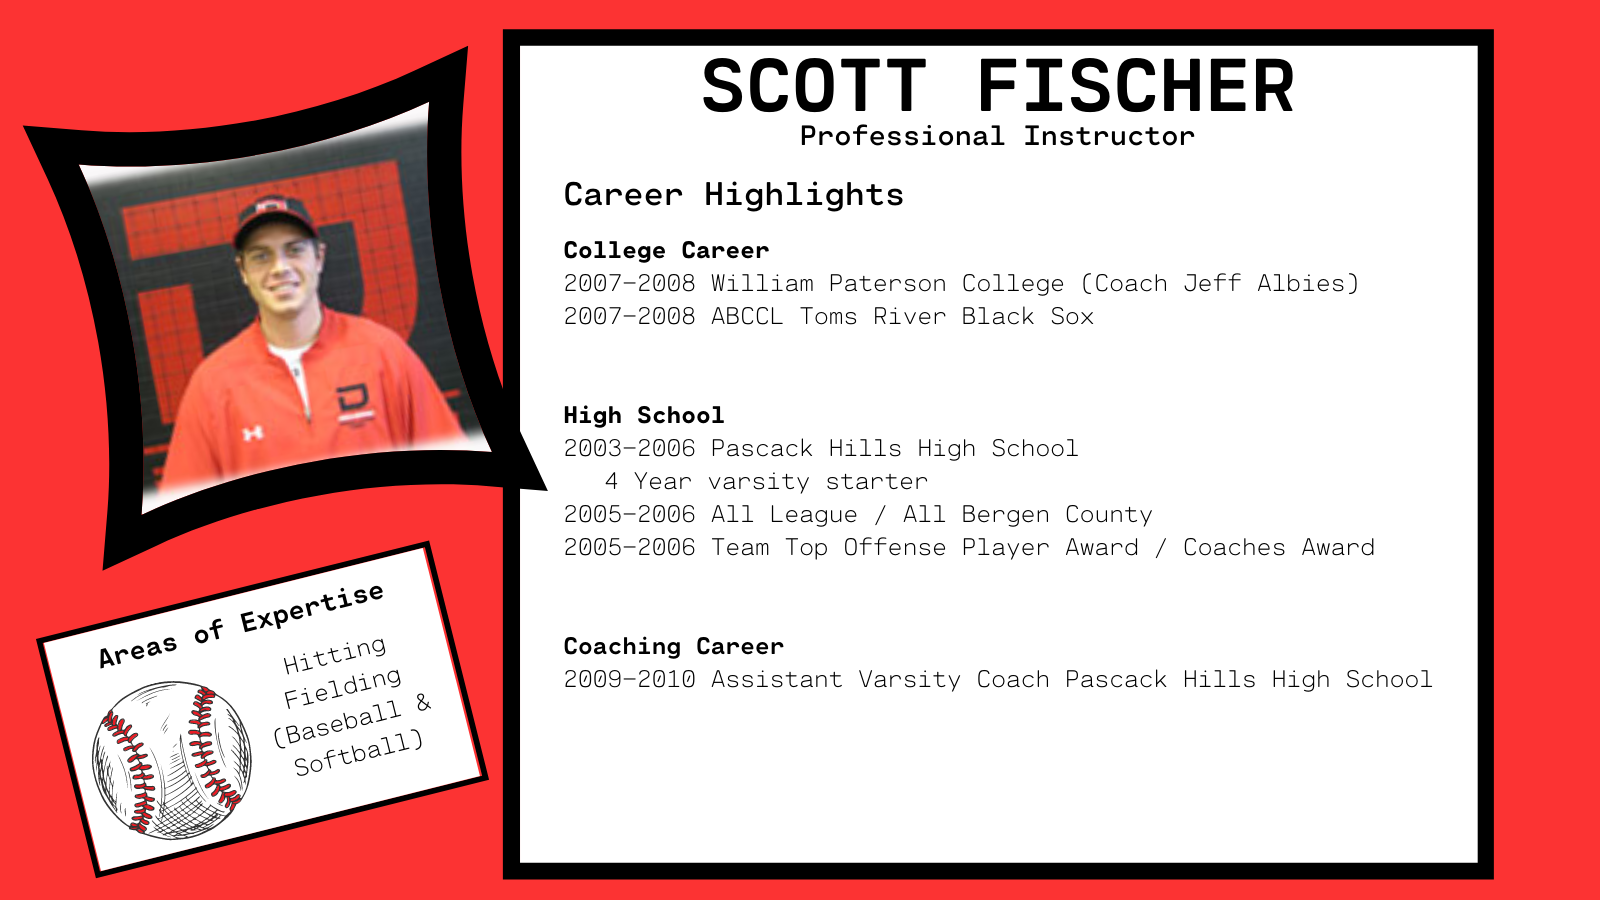 Scott Fischer